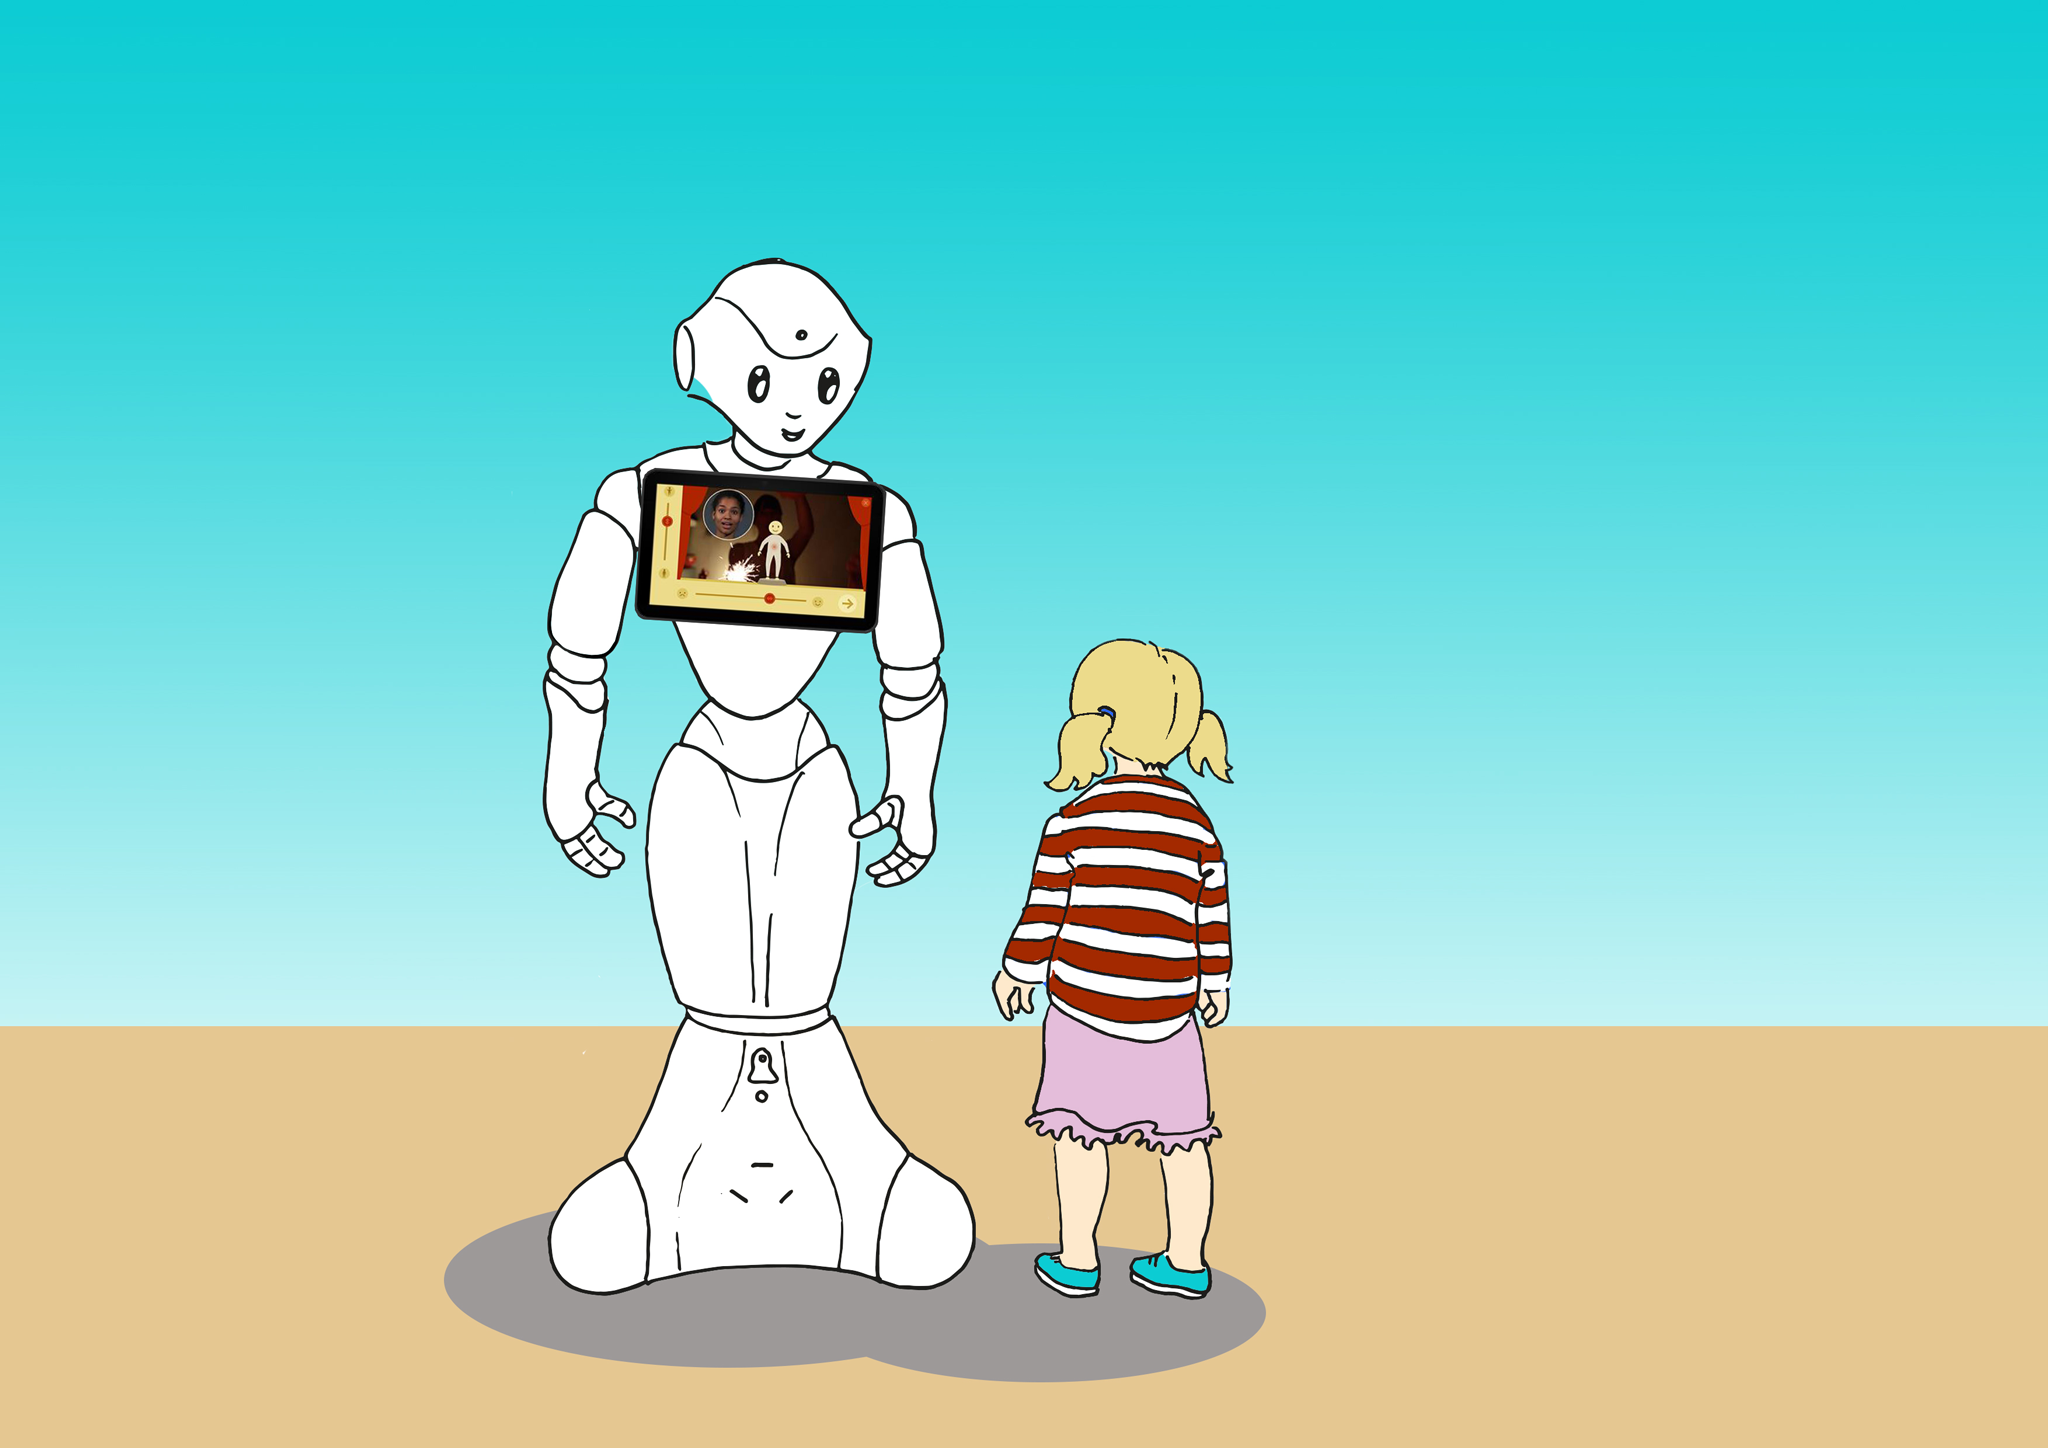 Entwicklung einer Roboterplattform zur Unterstützung neuer Interaktionsstrategien bei Kindern mit eingeschränkten sozio-emotionalen Fähigkeiten